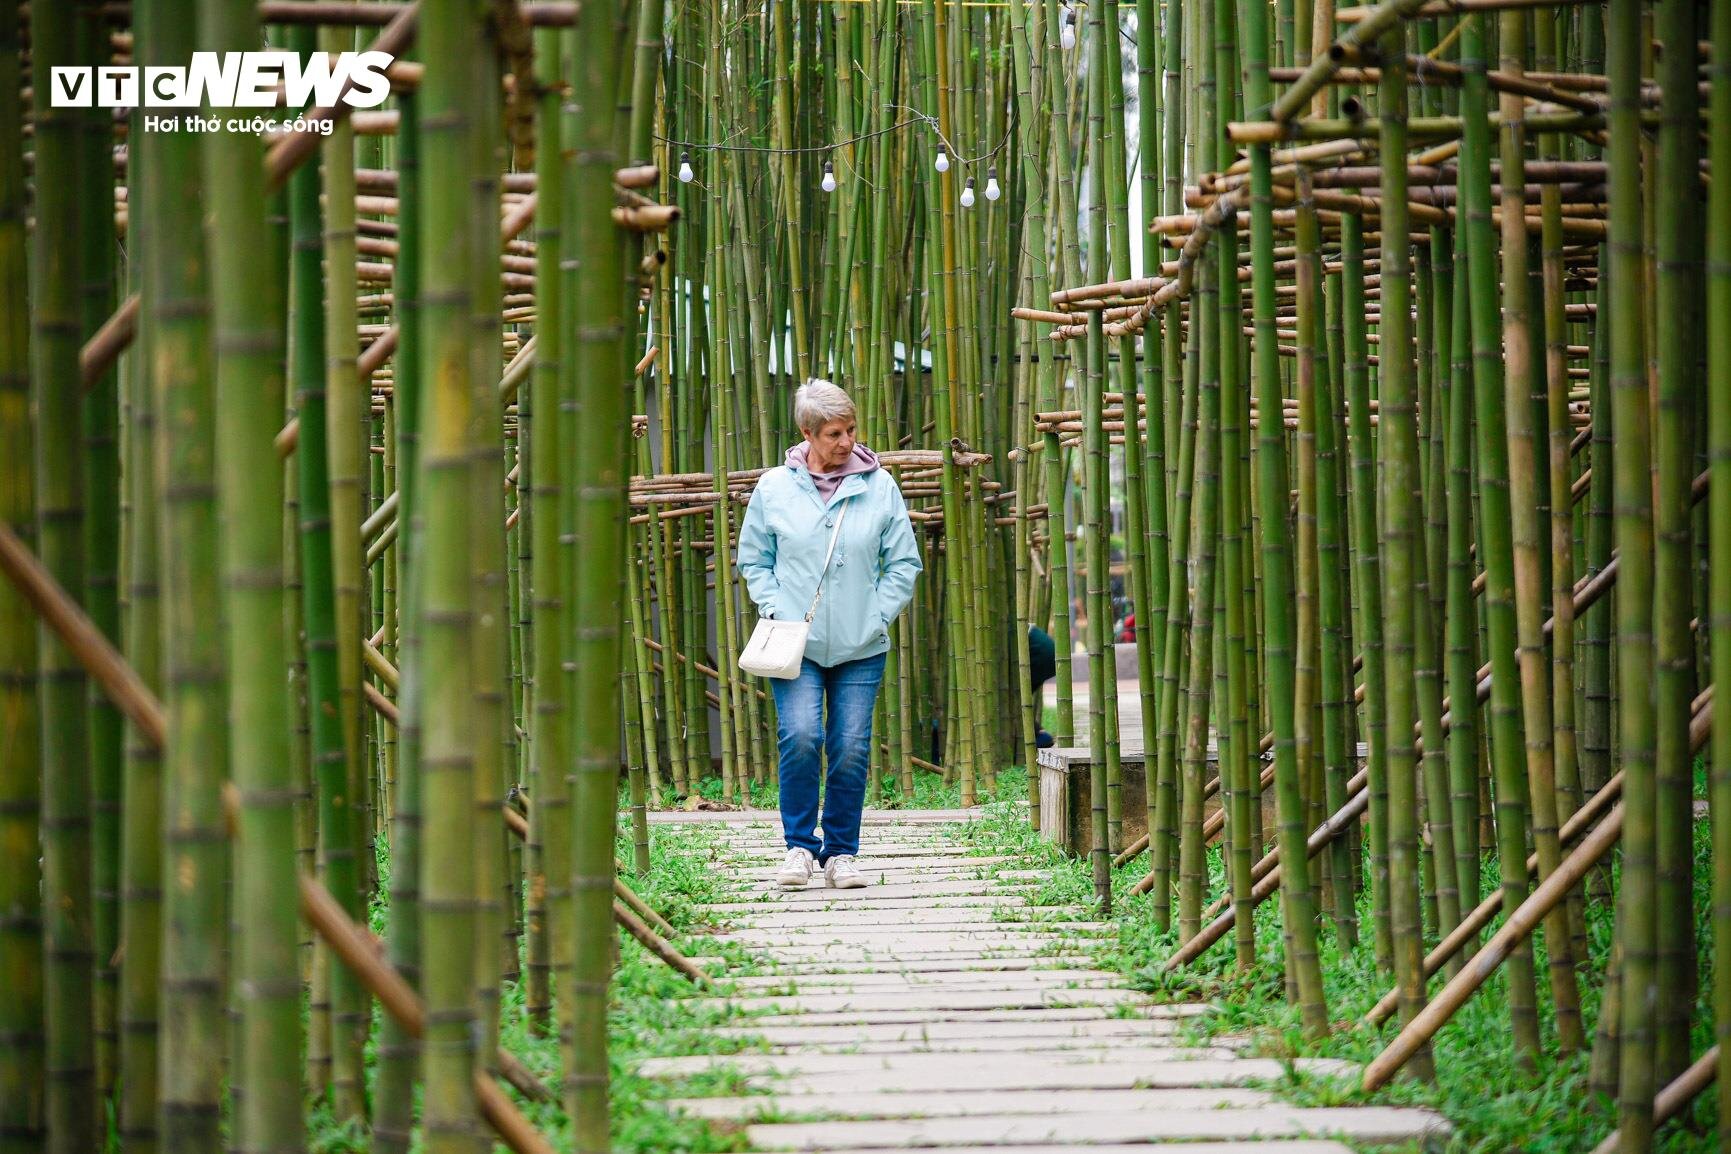 Du khách nước ngoài mê mẩn vườn trúc đẹp như trong phim ở Hà Nội - 8